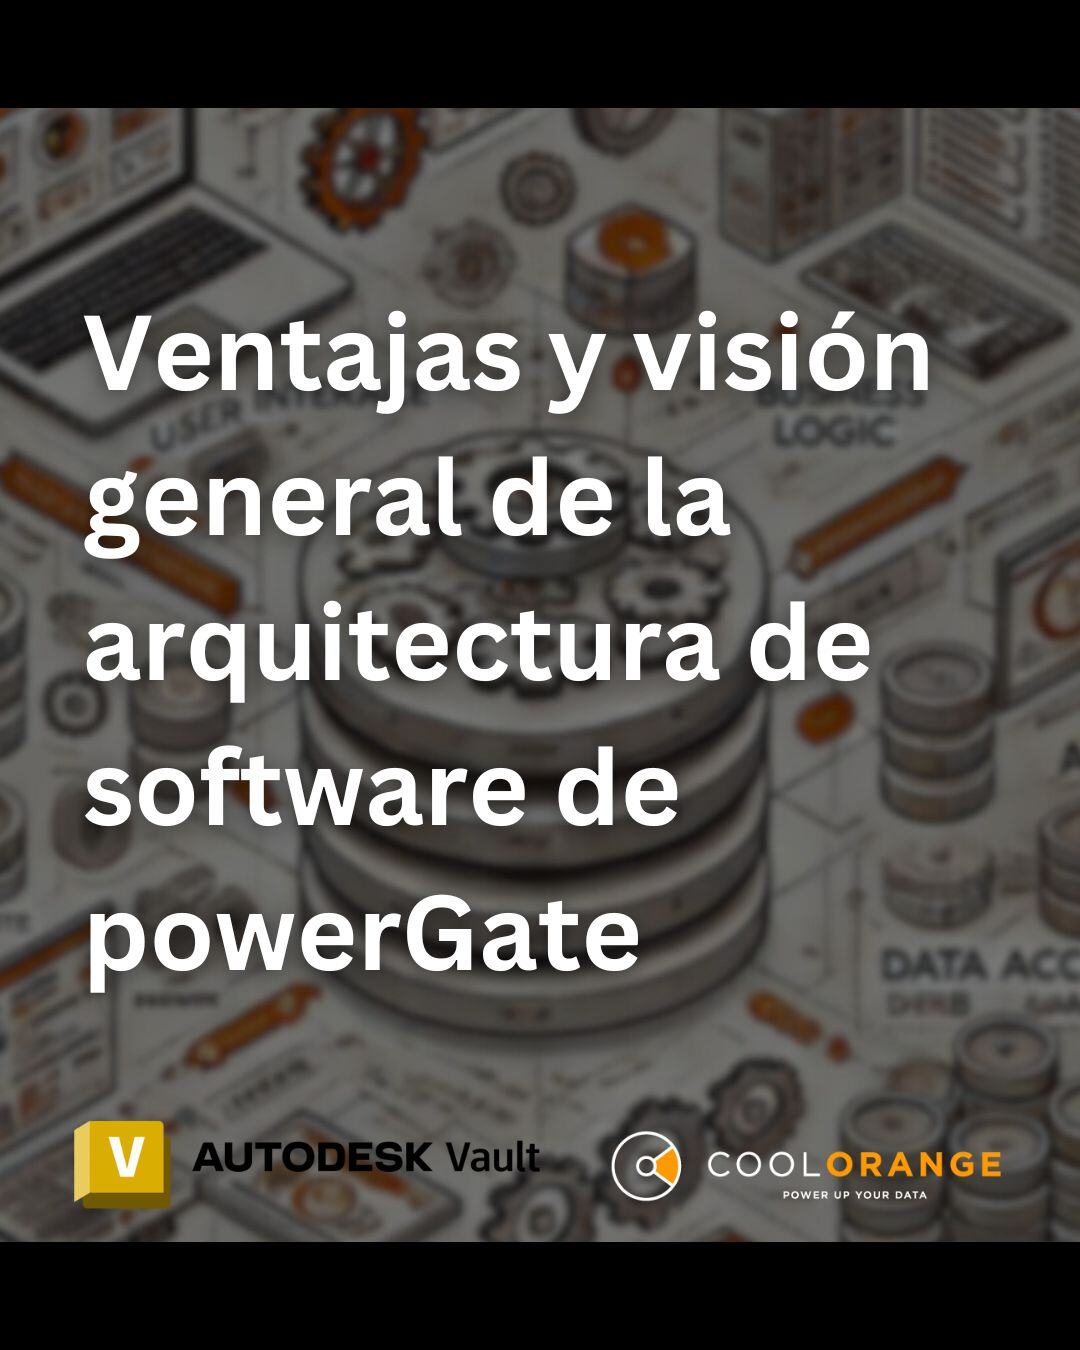 Ventajas y visión general de la estructura arquitectónica del software powerGate